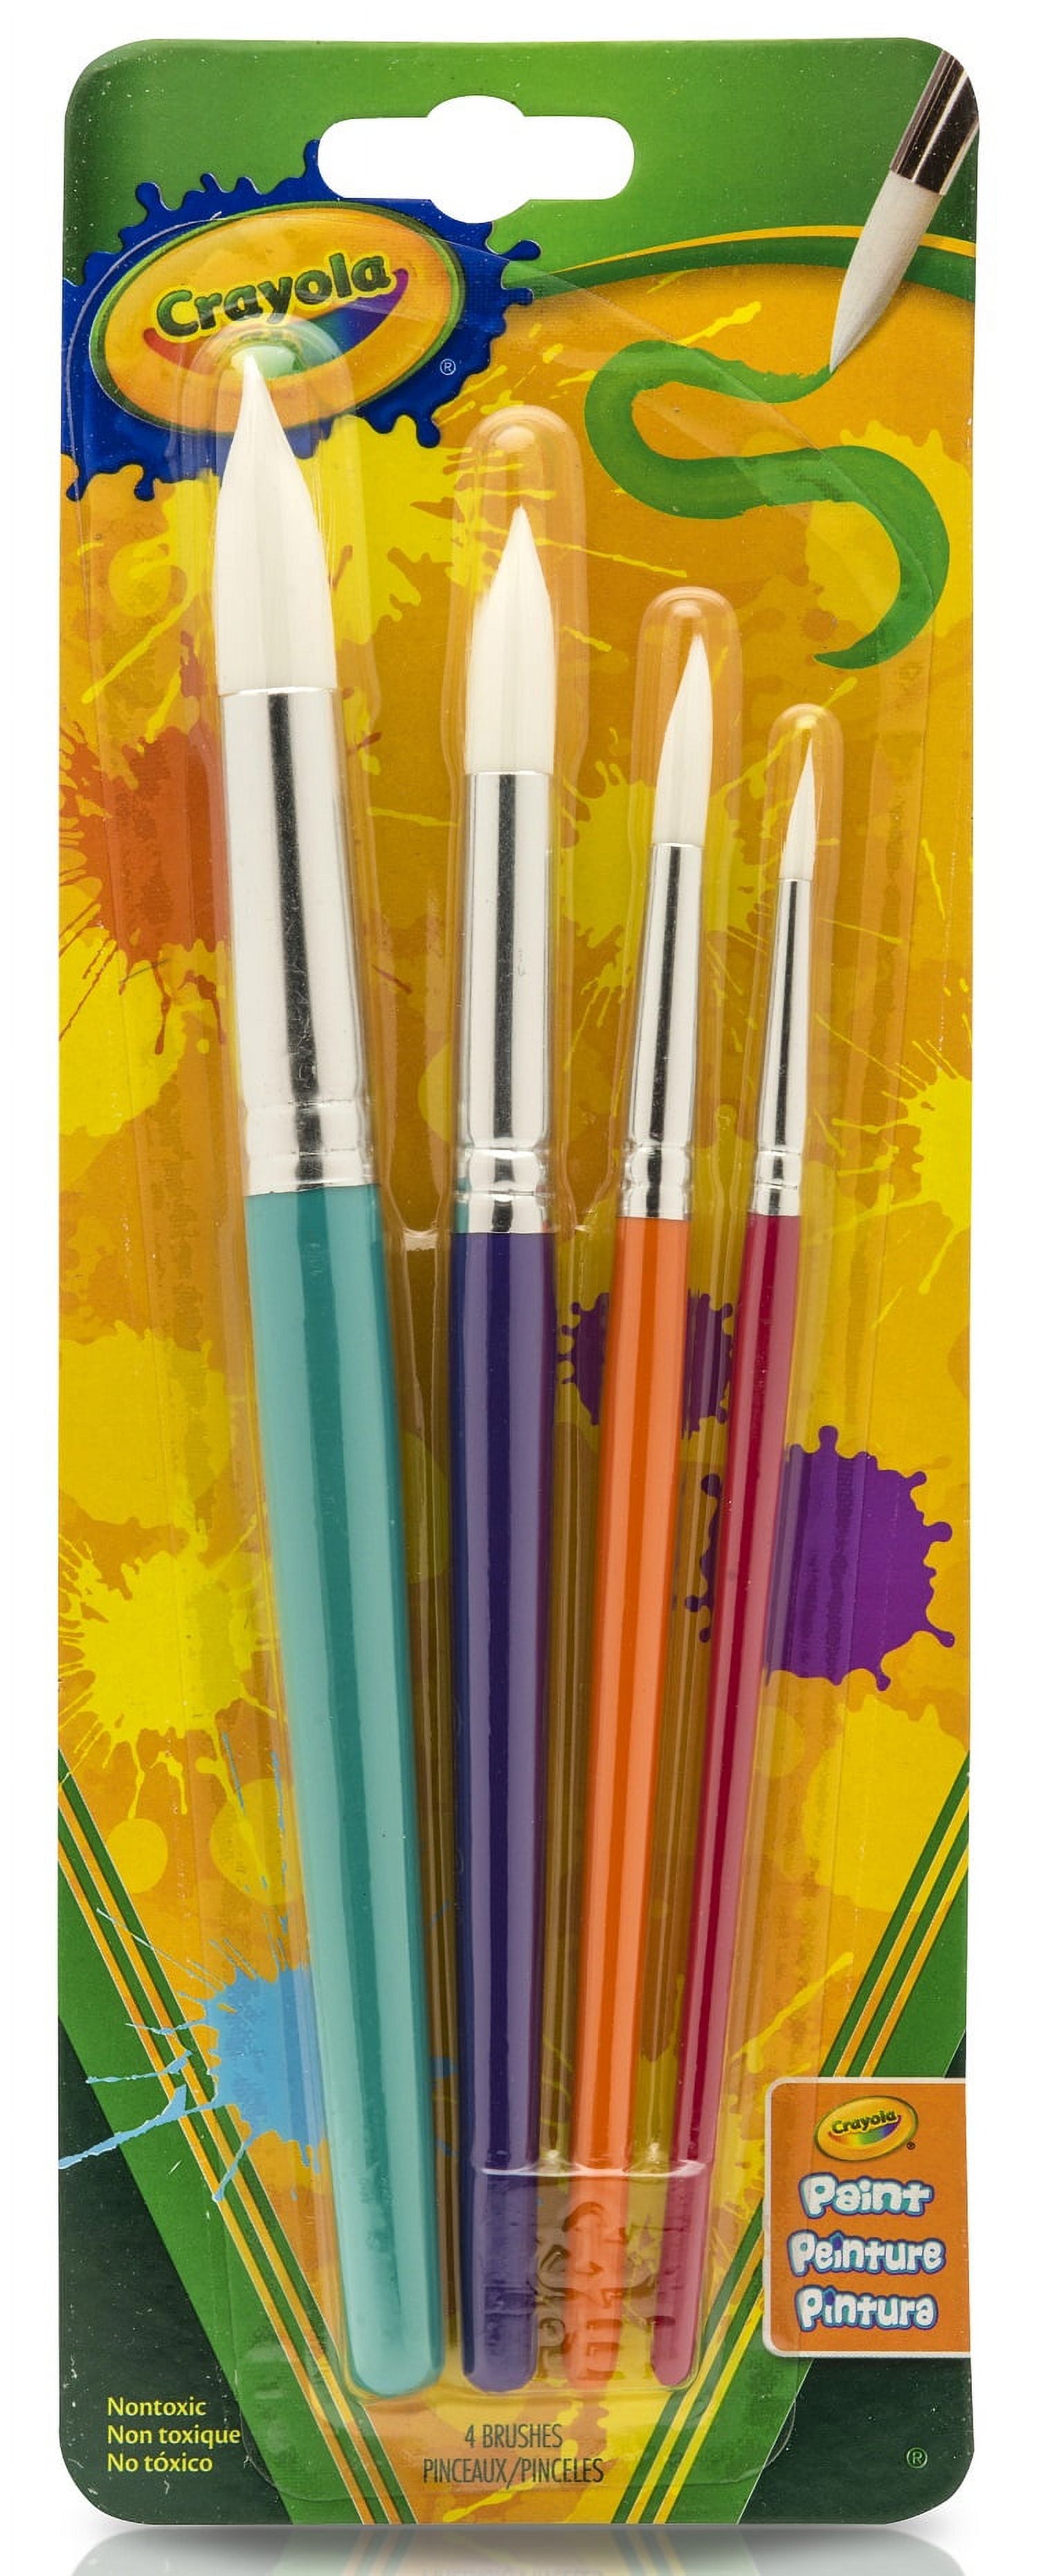 Crayola 4 Count Round Paint Brush Set - image 1 of 6